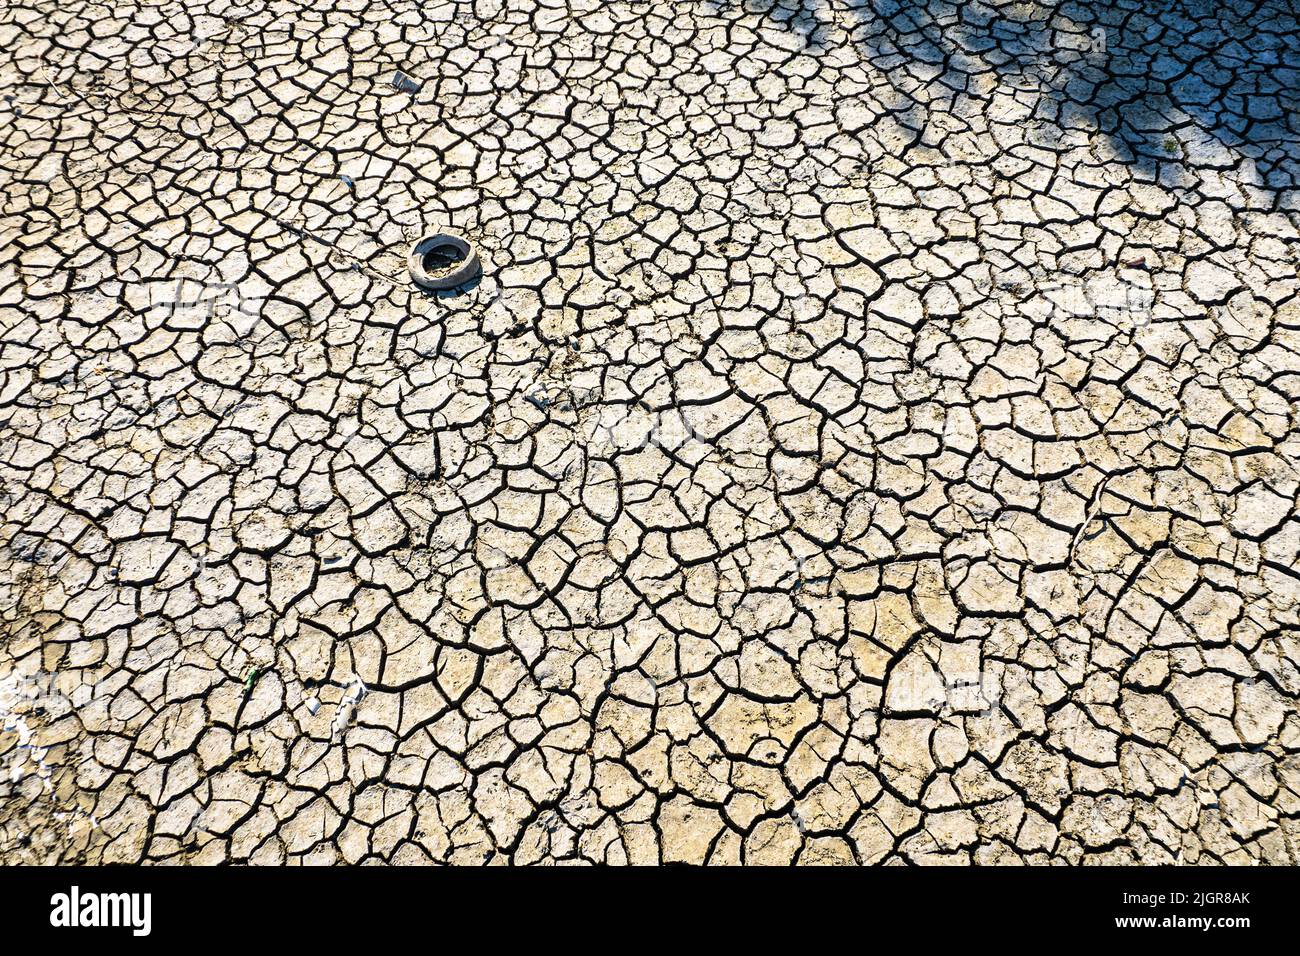 Alte Reifen, die illegal im Po-Fluss verlassen wurden, sind aufgrund von Dürre sichtbar. Carmagnola, Italien - Juli 2022 Stockfoto